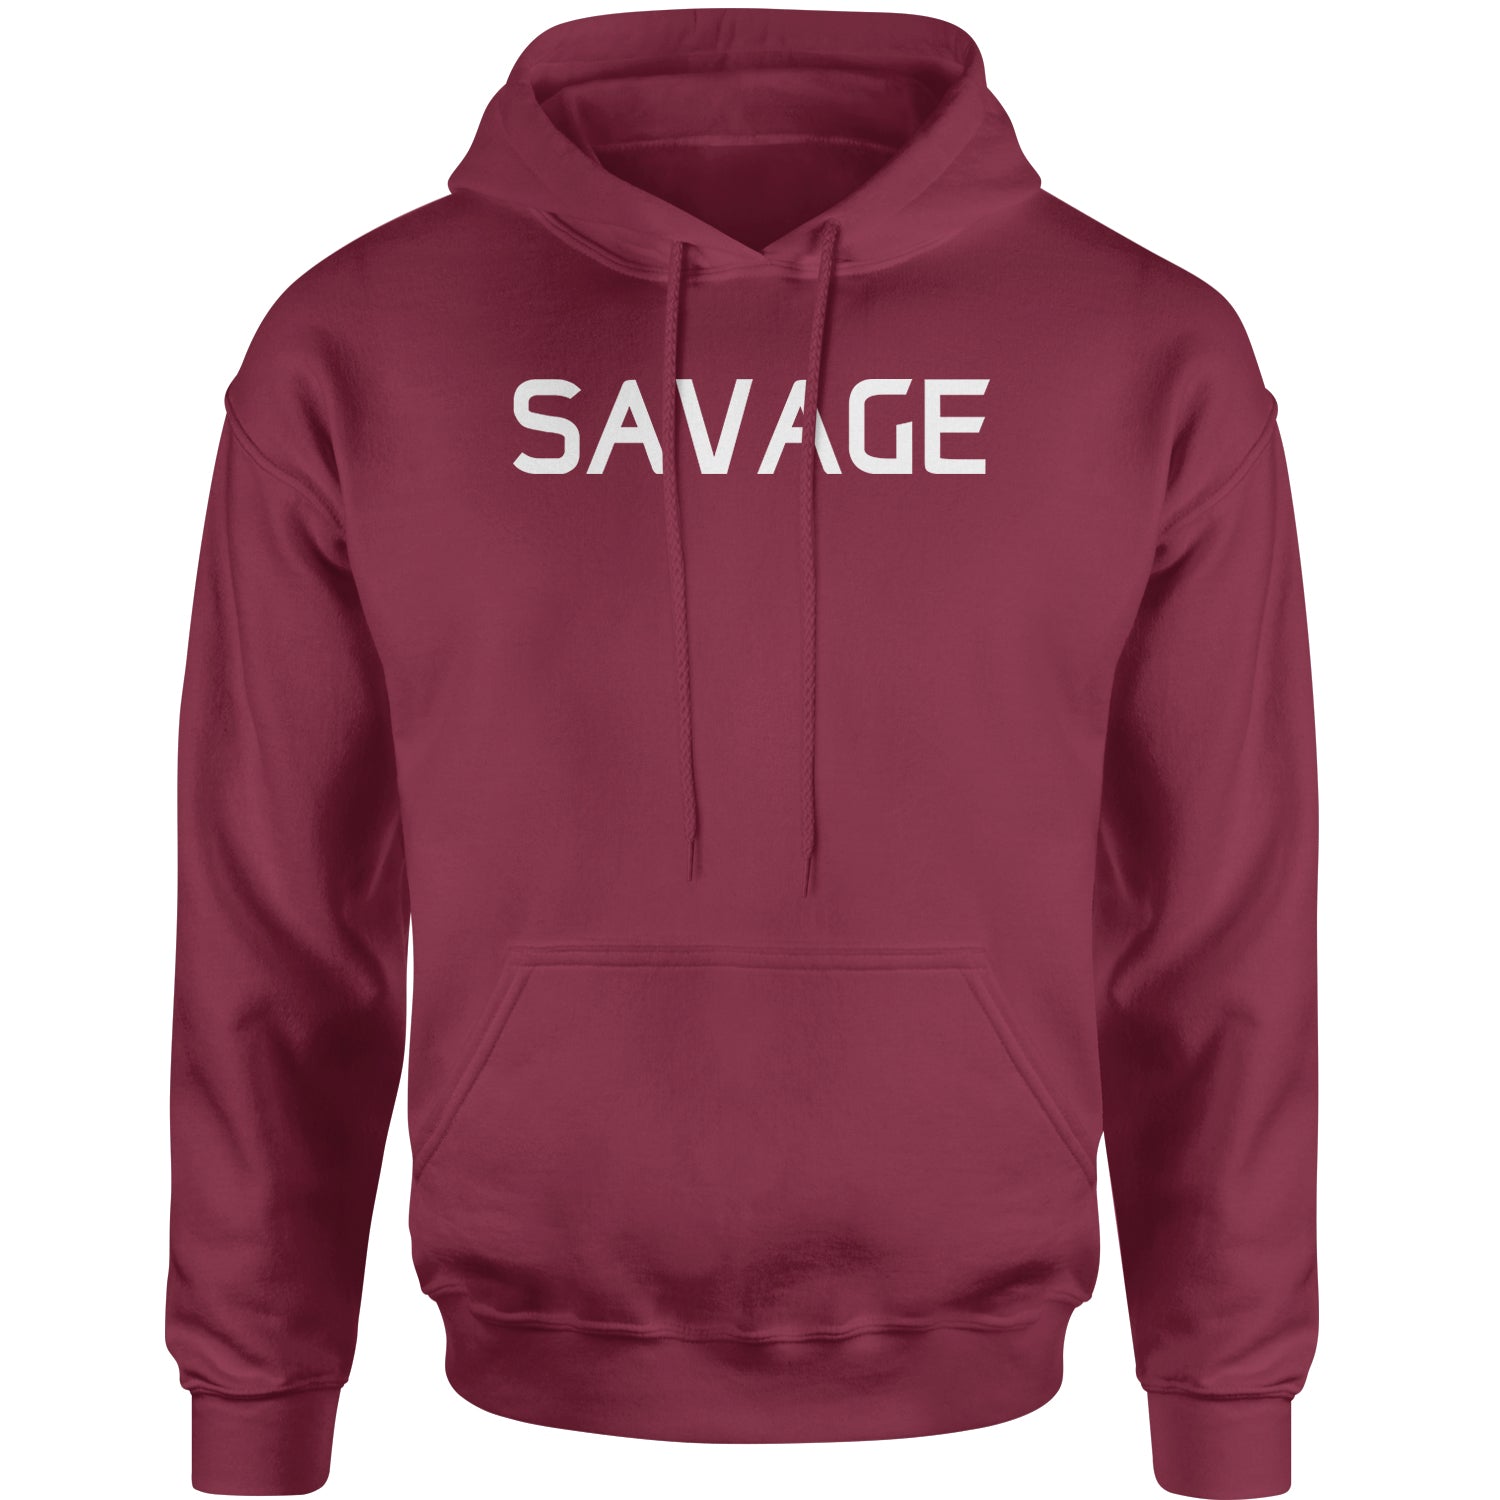 Savage Adult Hoodie Sweatshirt #expressiontees by Expression Tees